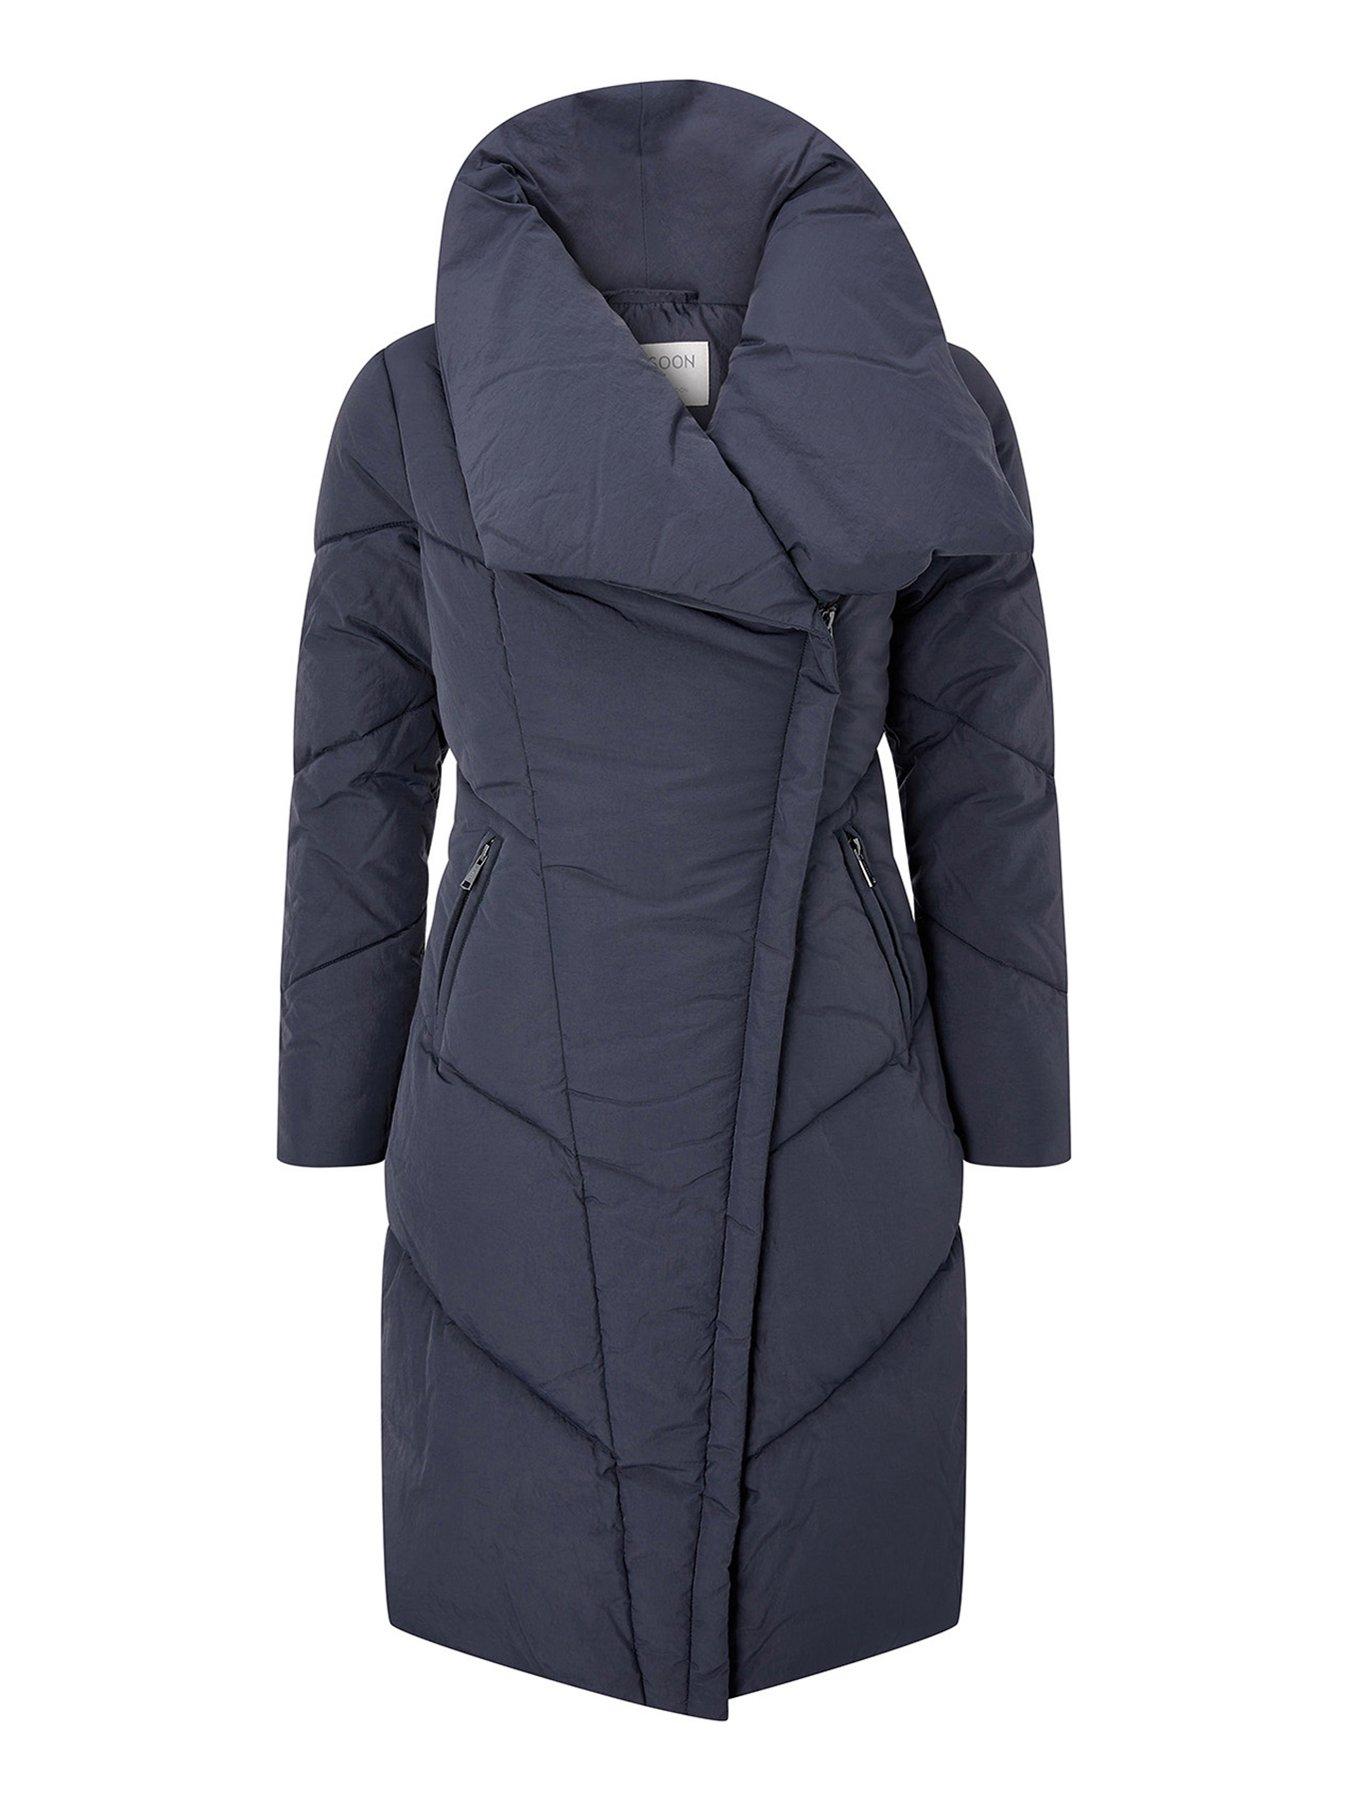 women's casual coats uk